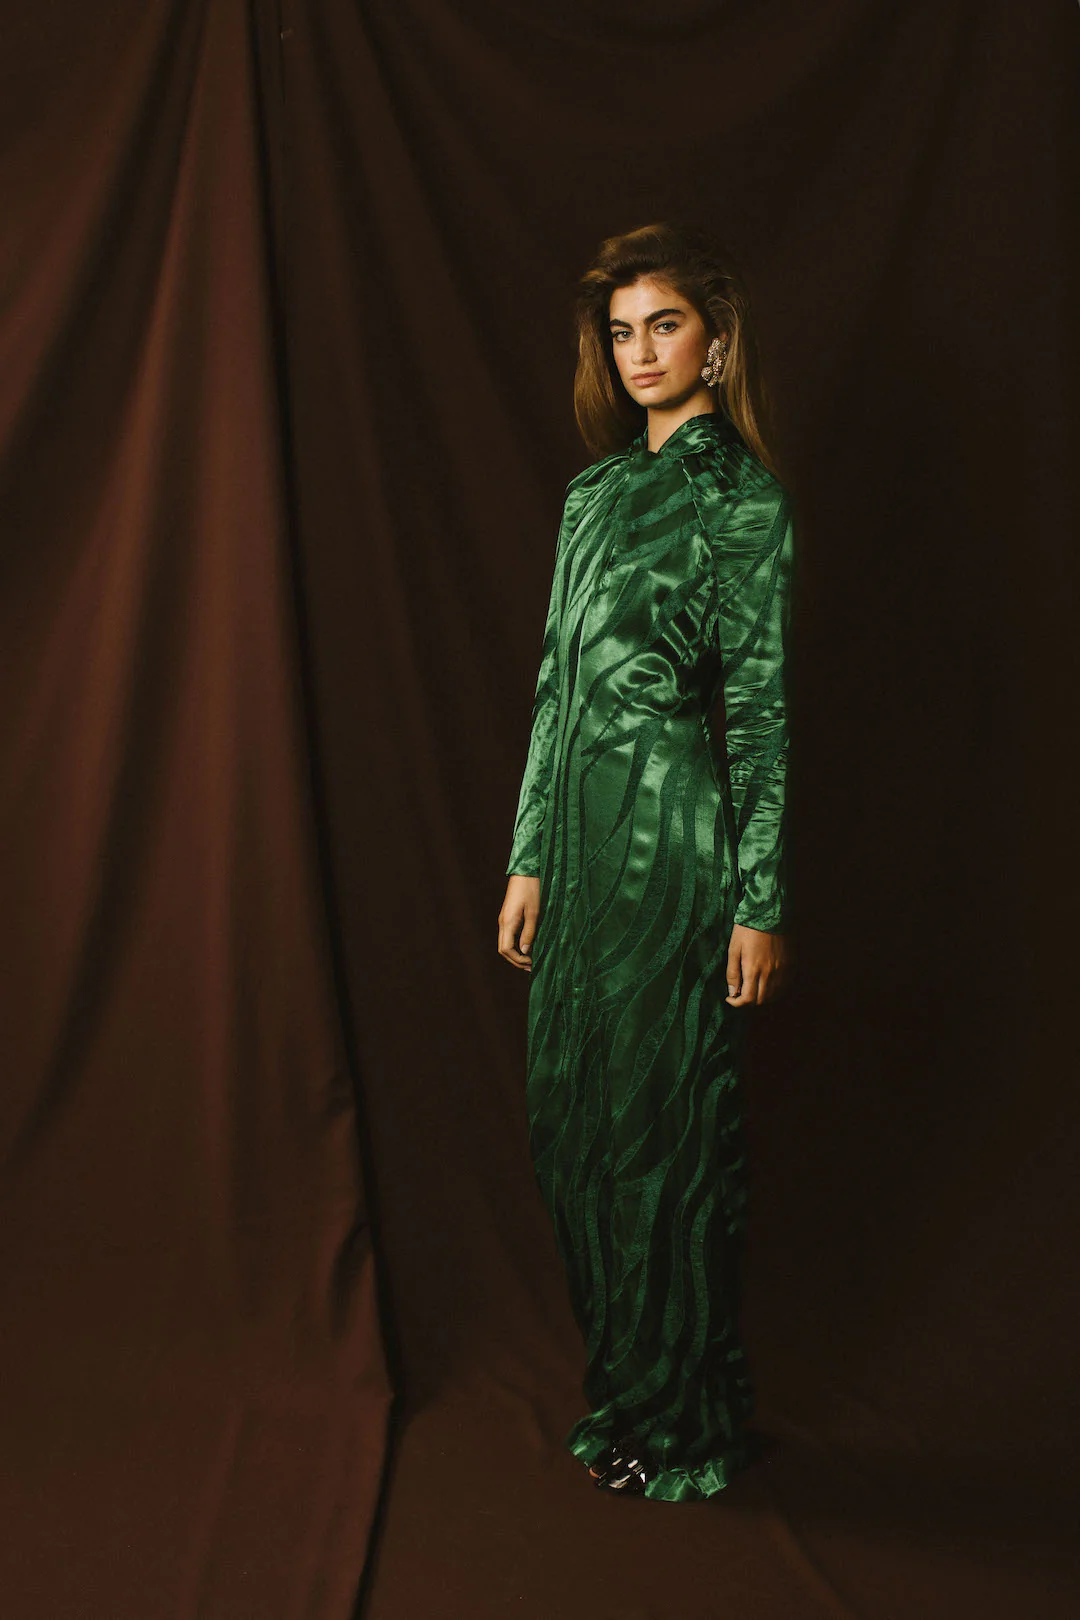 Vestido Emma Esmeralda de Redondo Brand, diseño largo en jacquard verde con cuello en nudo y apertura frontal, ideal para bodas de invierno.